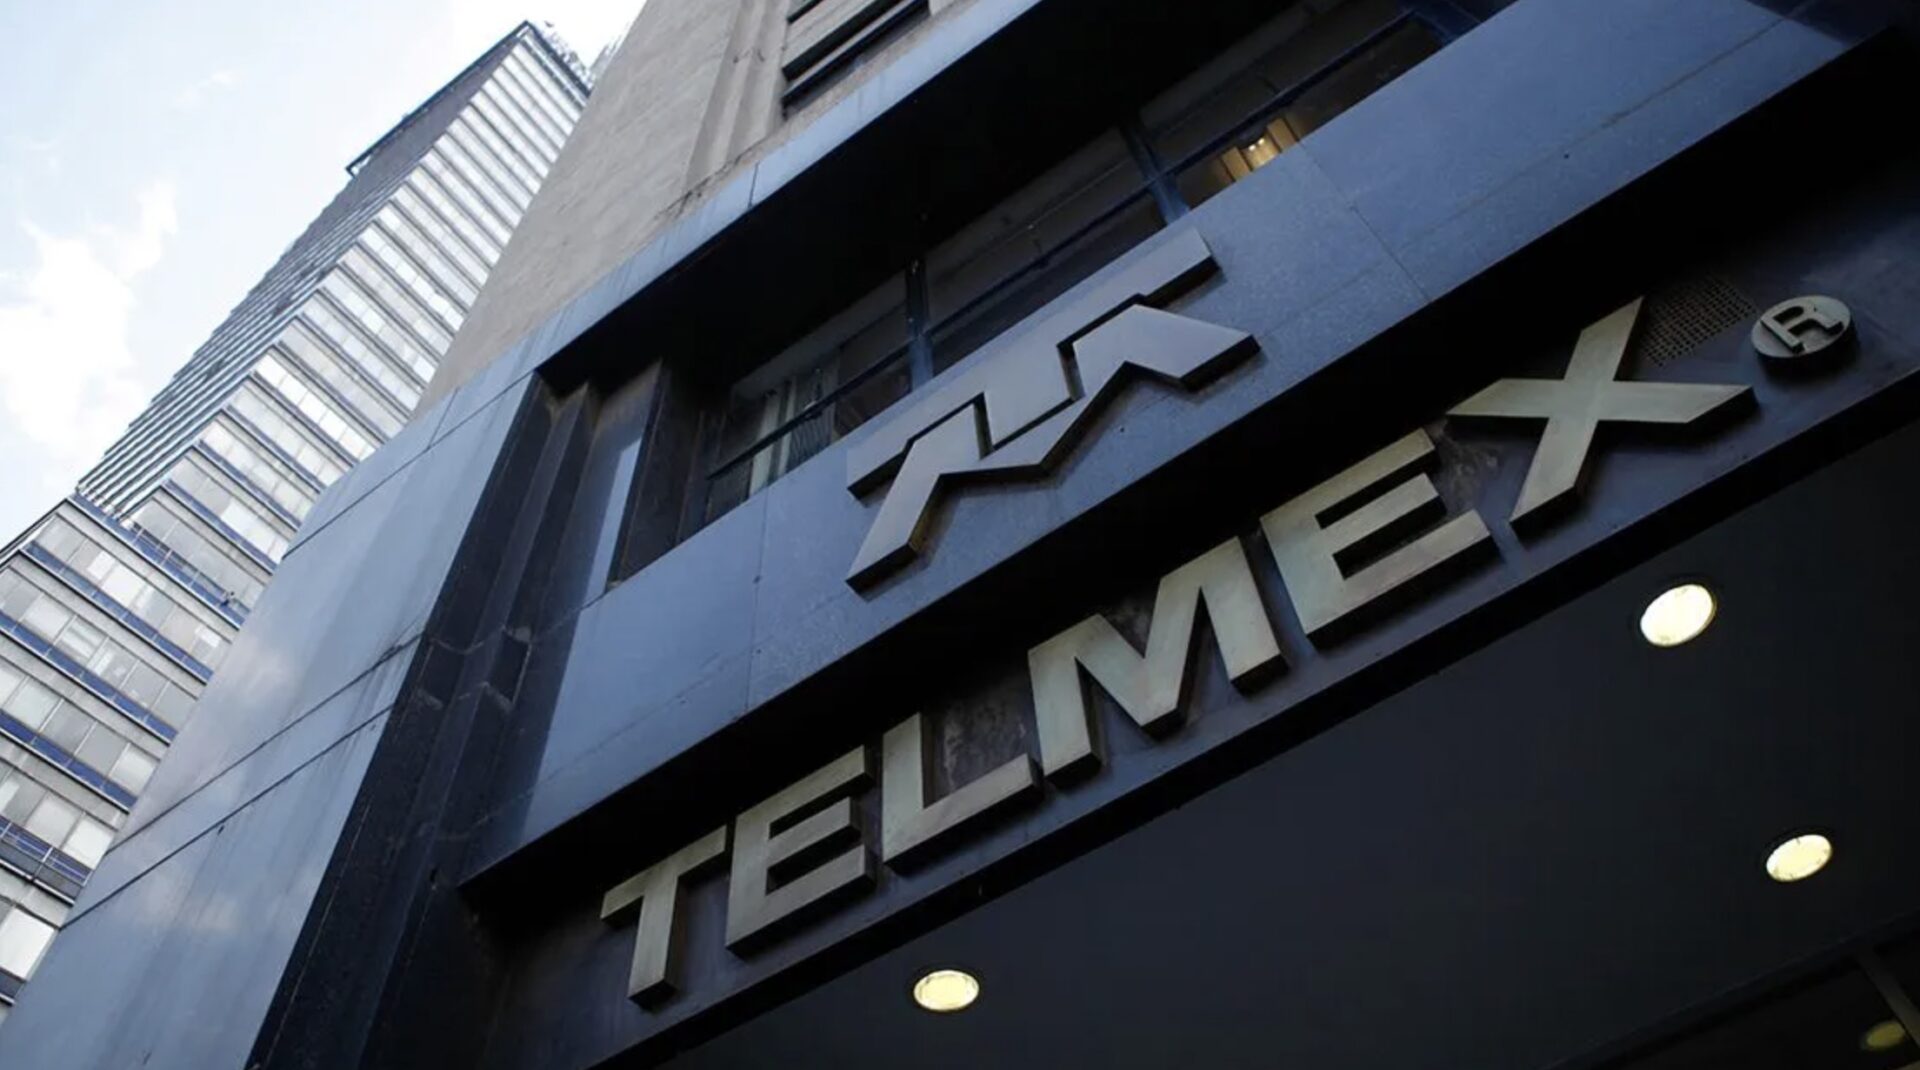 Sindicato de Telefonistas alcanza acuerdo con Telmex y levanta huelga